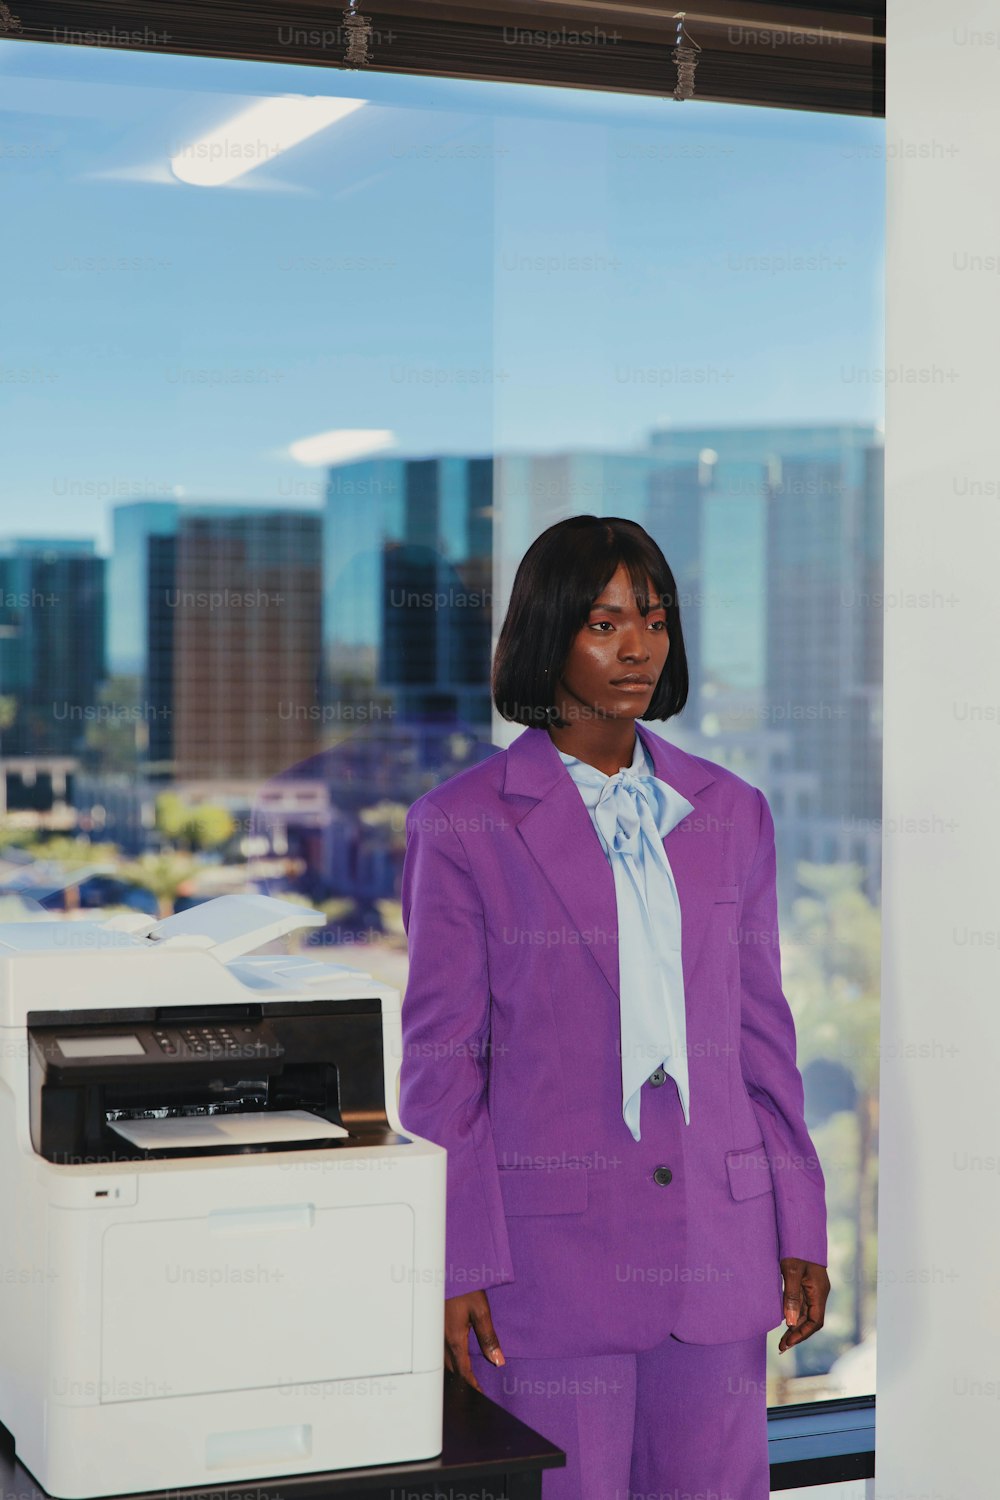 una mujer con un traje morado de pie junto a una impresora